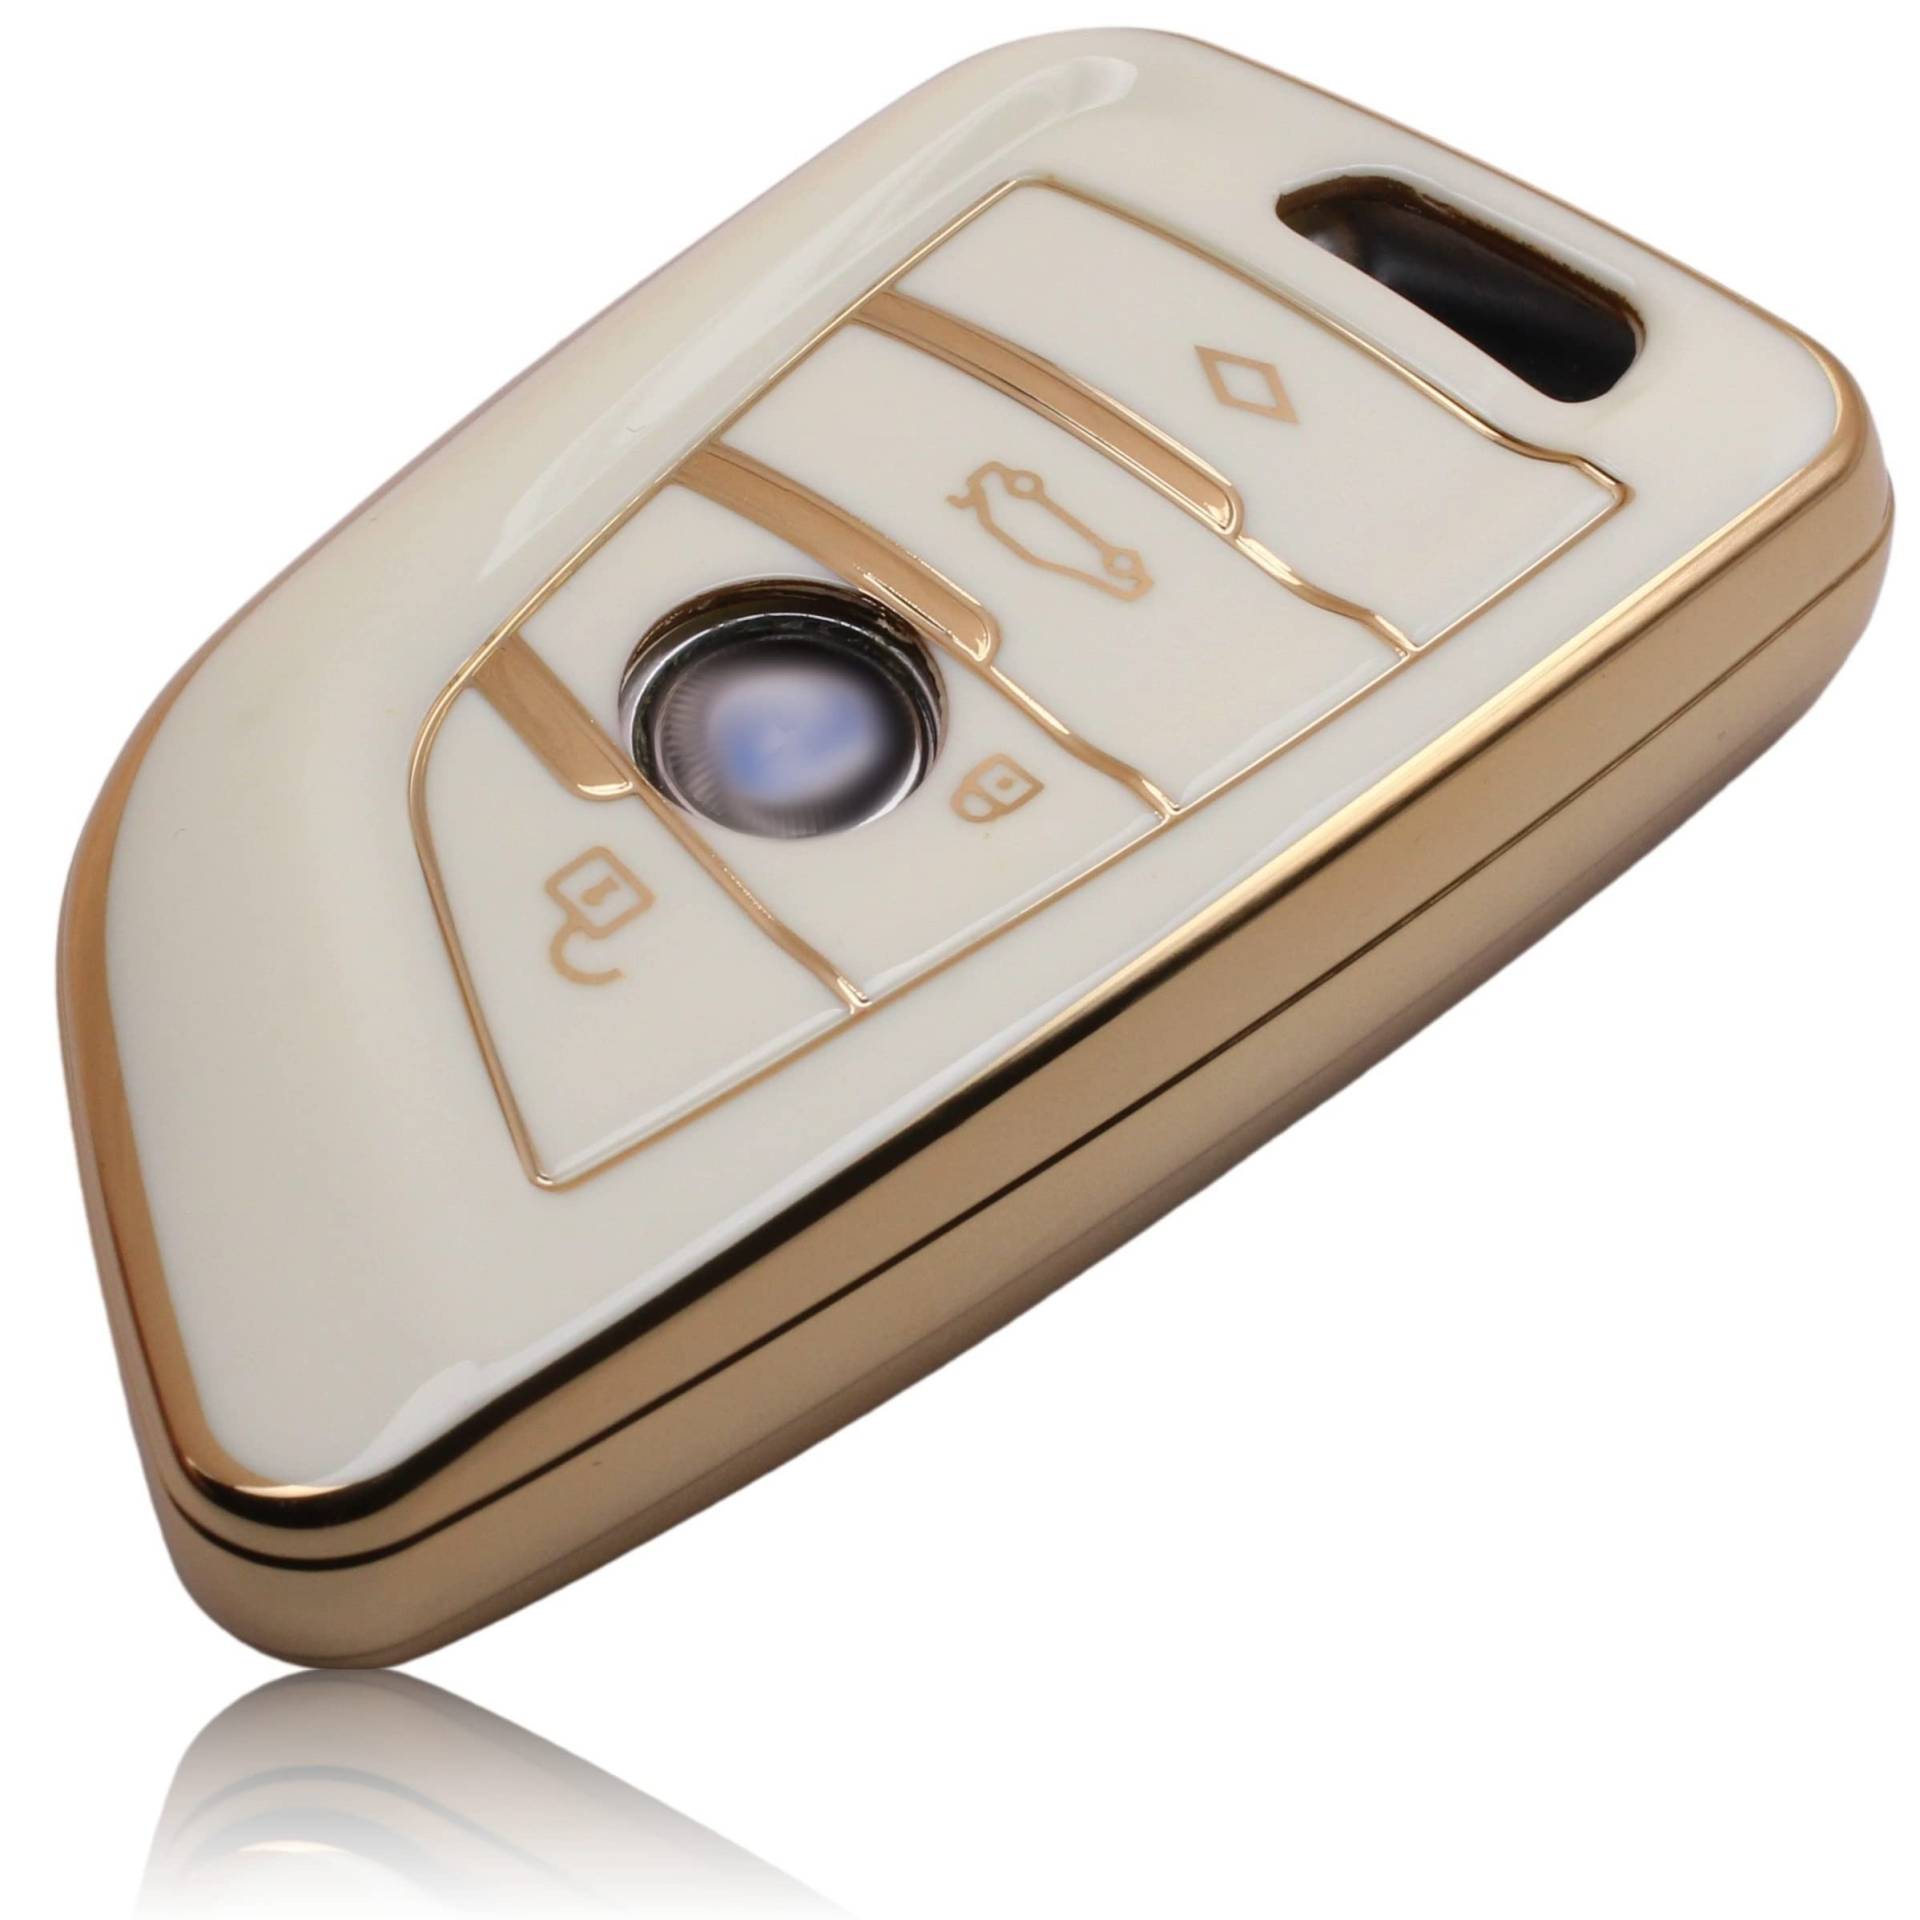 FOAMO Autoschlüssel Hülle kompatibel mit BMW 3-4-Tasten (nur Keyless-Go) - TPU Schutzhülle Cover Schlüssel-Hülle in Weiß von FOAMO